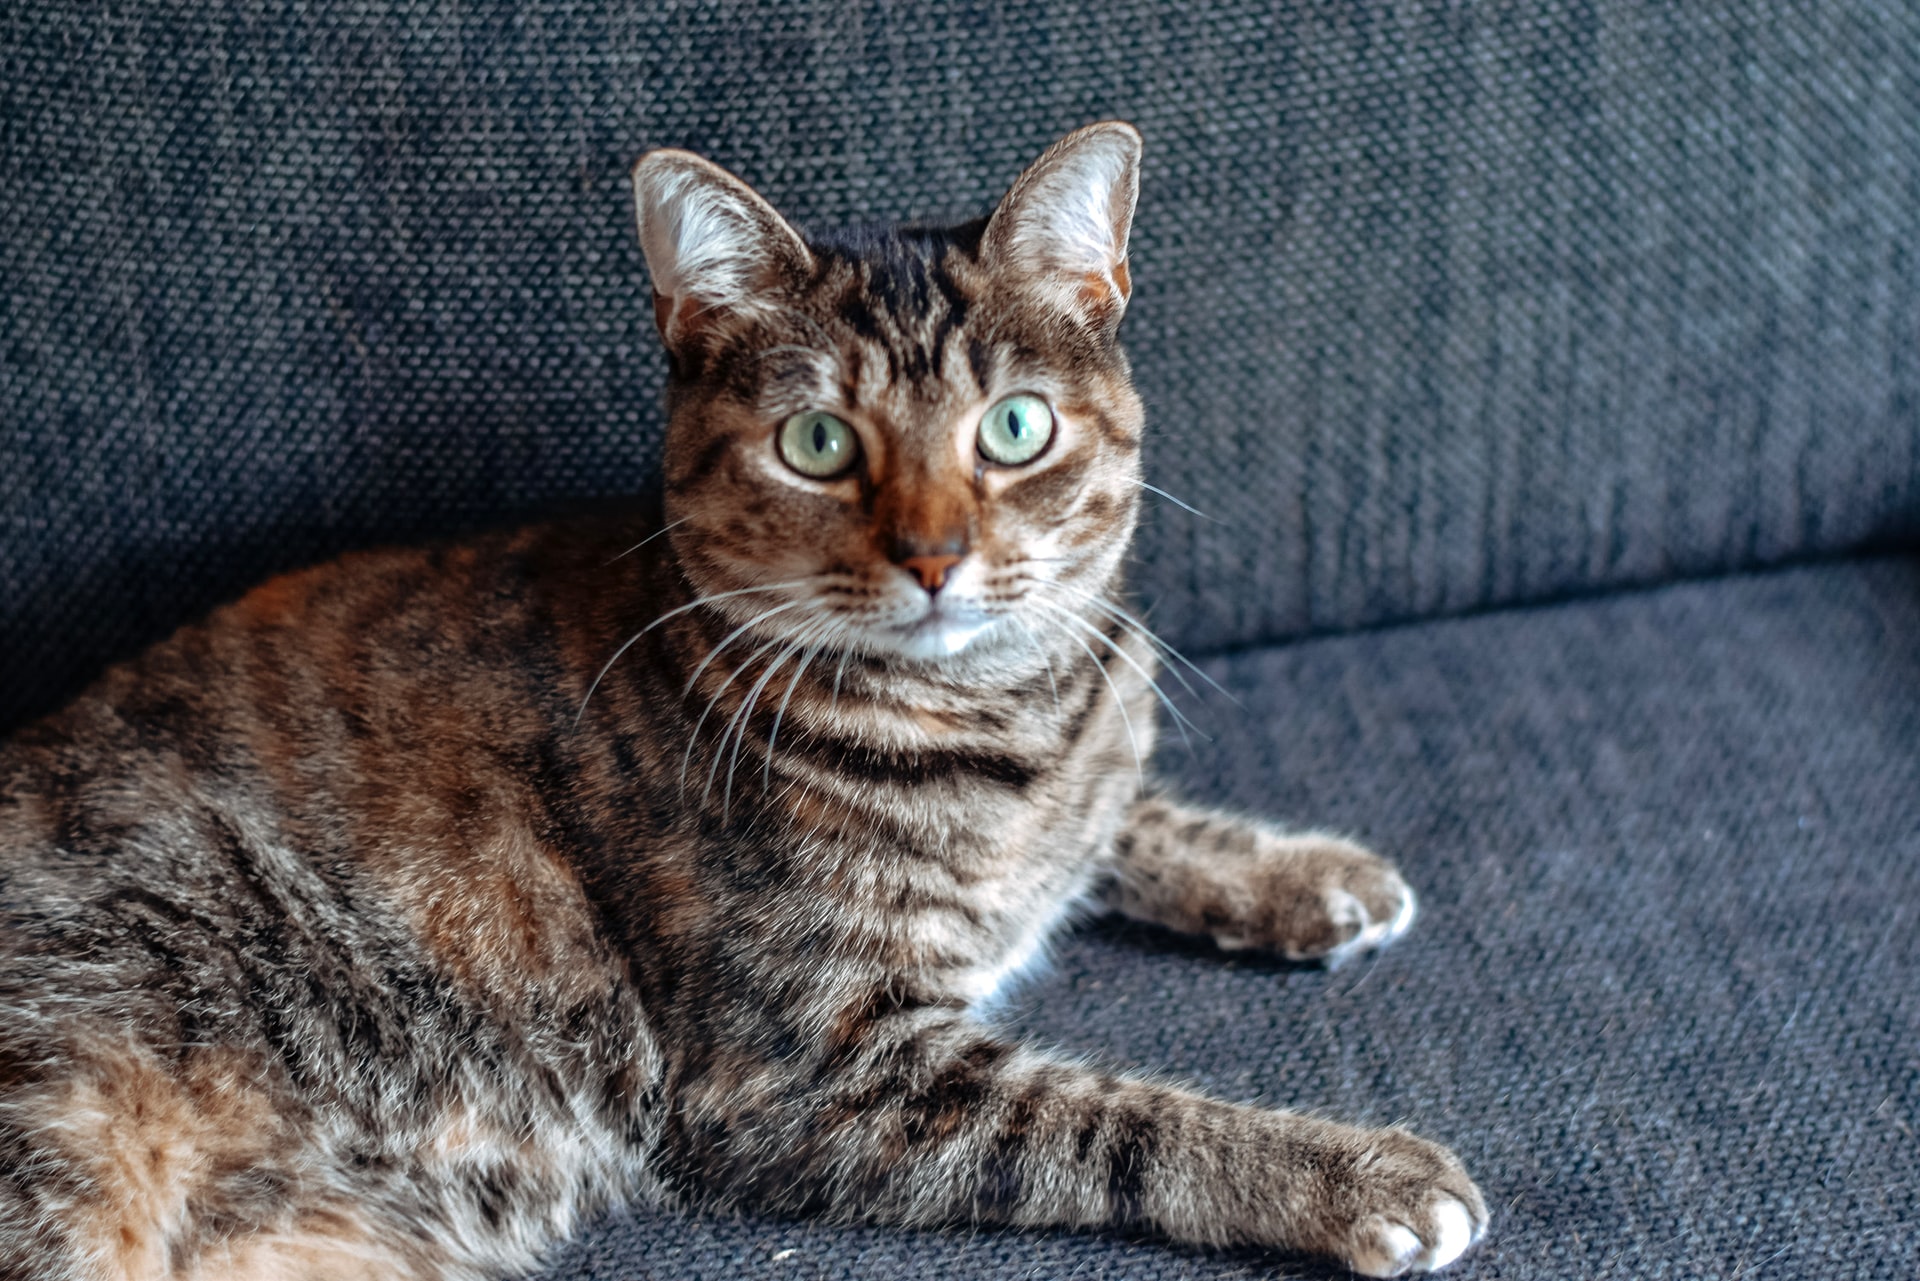 HCM hos katte: Årsager, symptomer og behandling